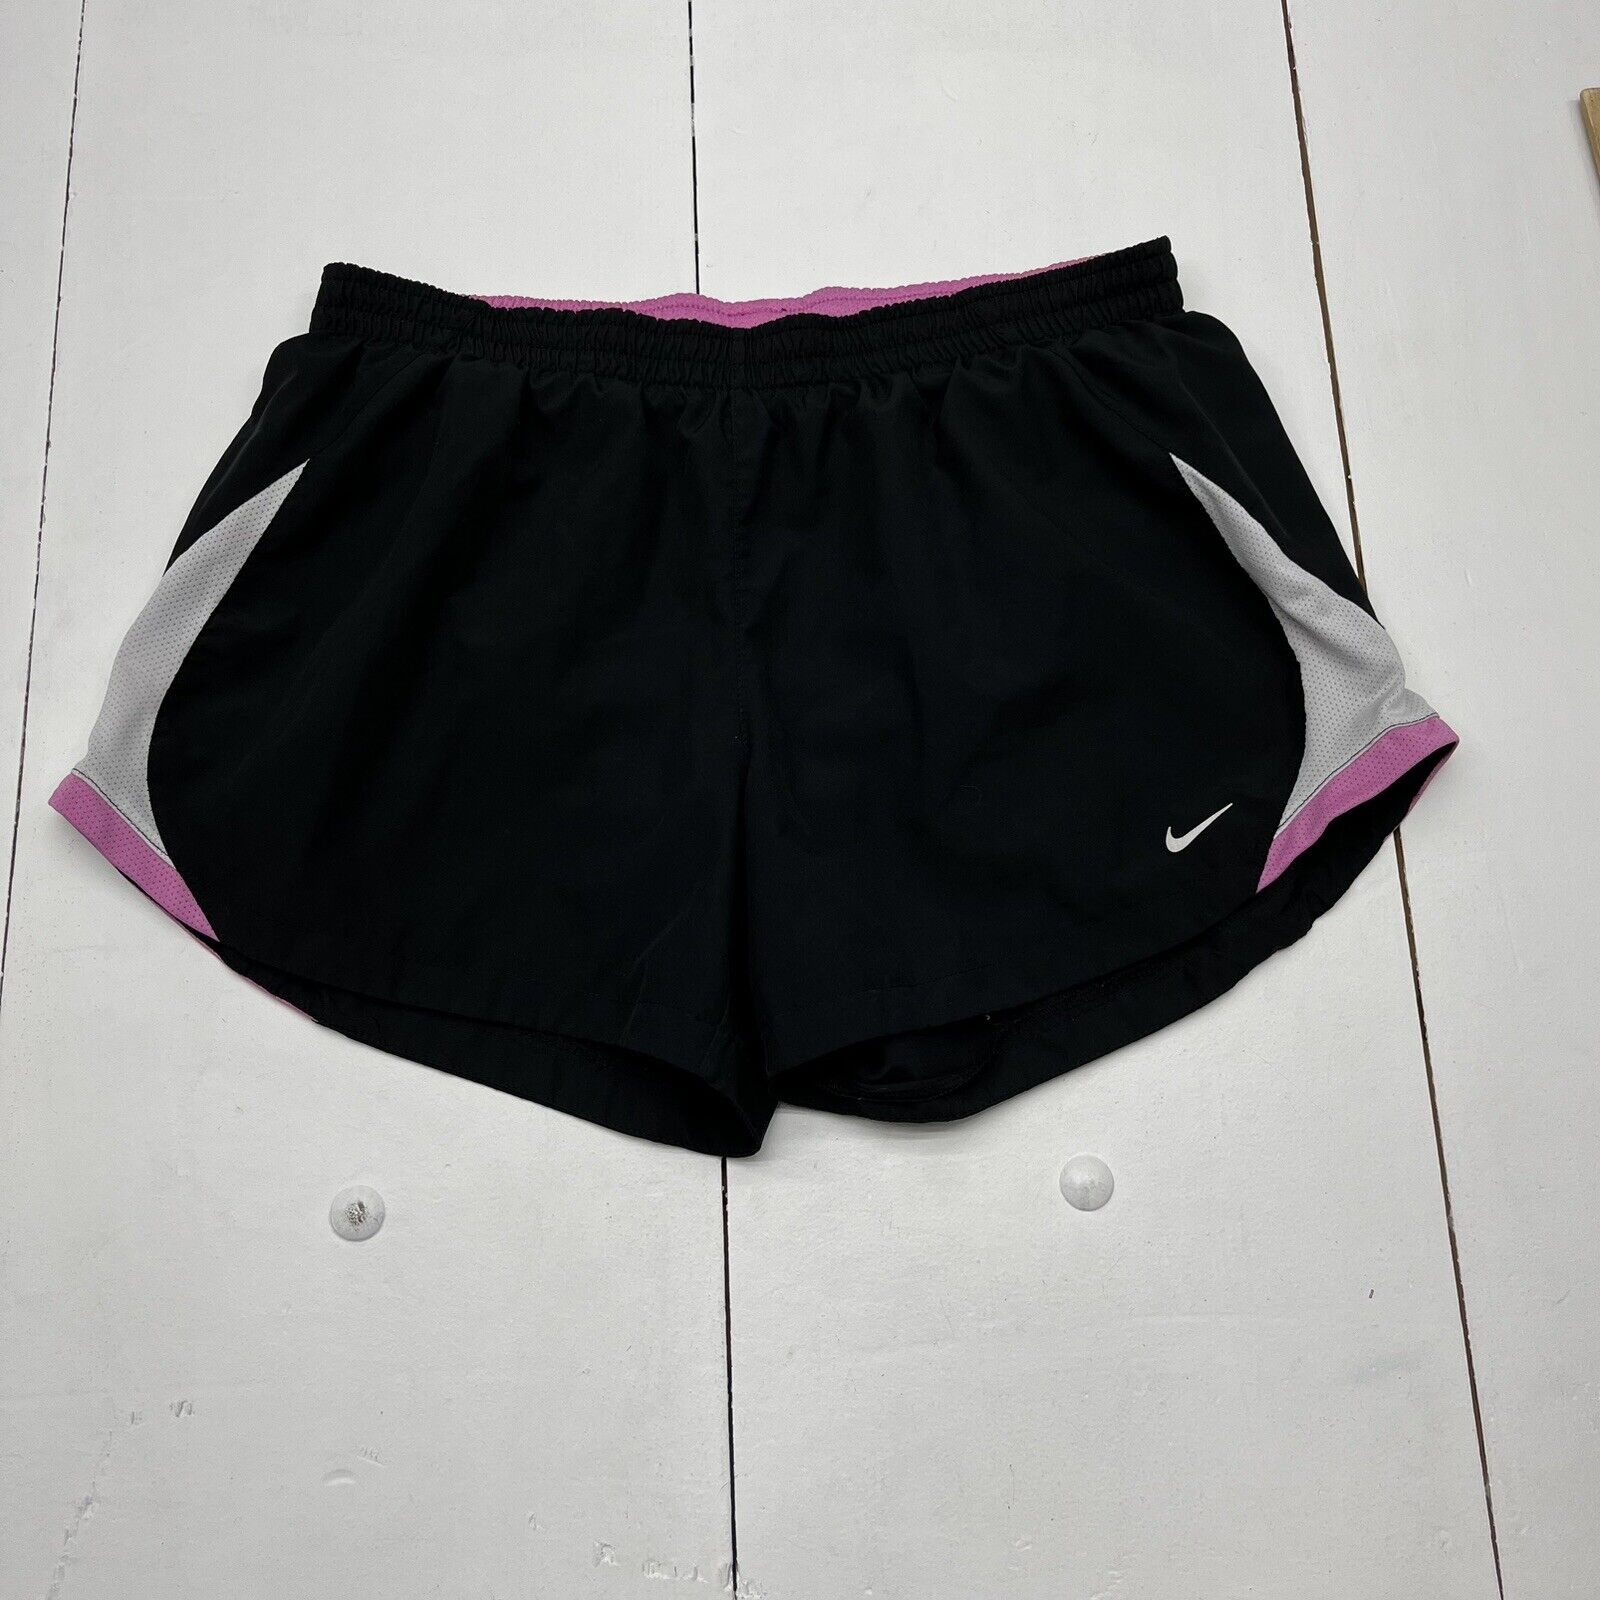 Nike Black / Hot Pink Performance Athletic Shorts Girls Size Large (12-14)